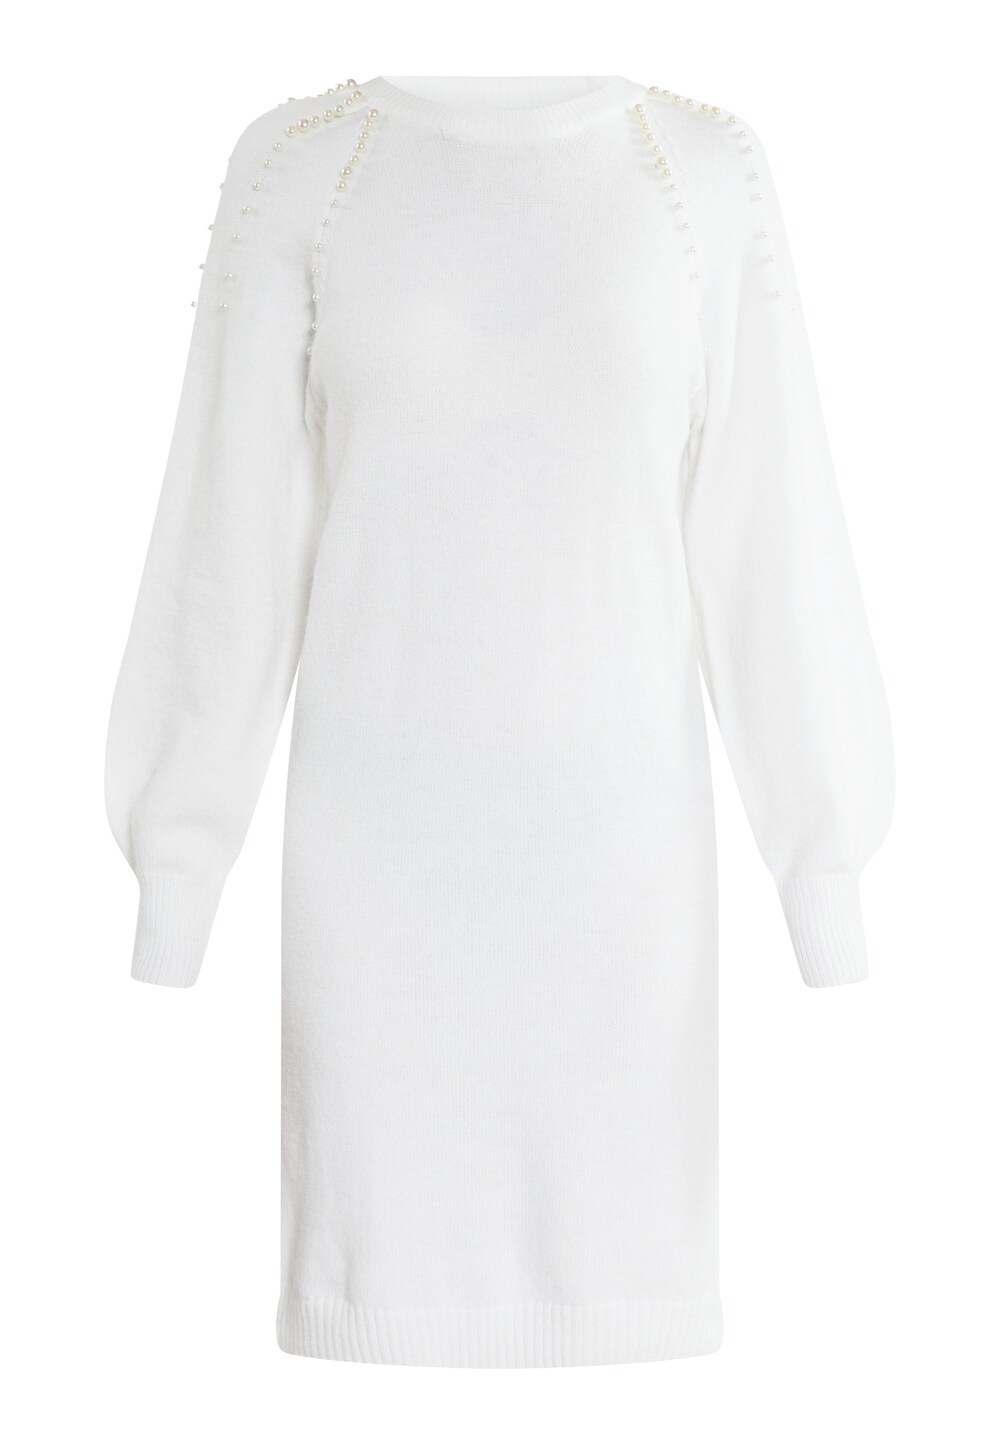 Вязанное платье faina Tuxe, белый